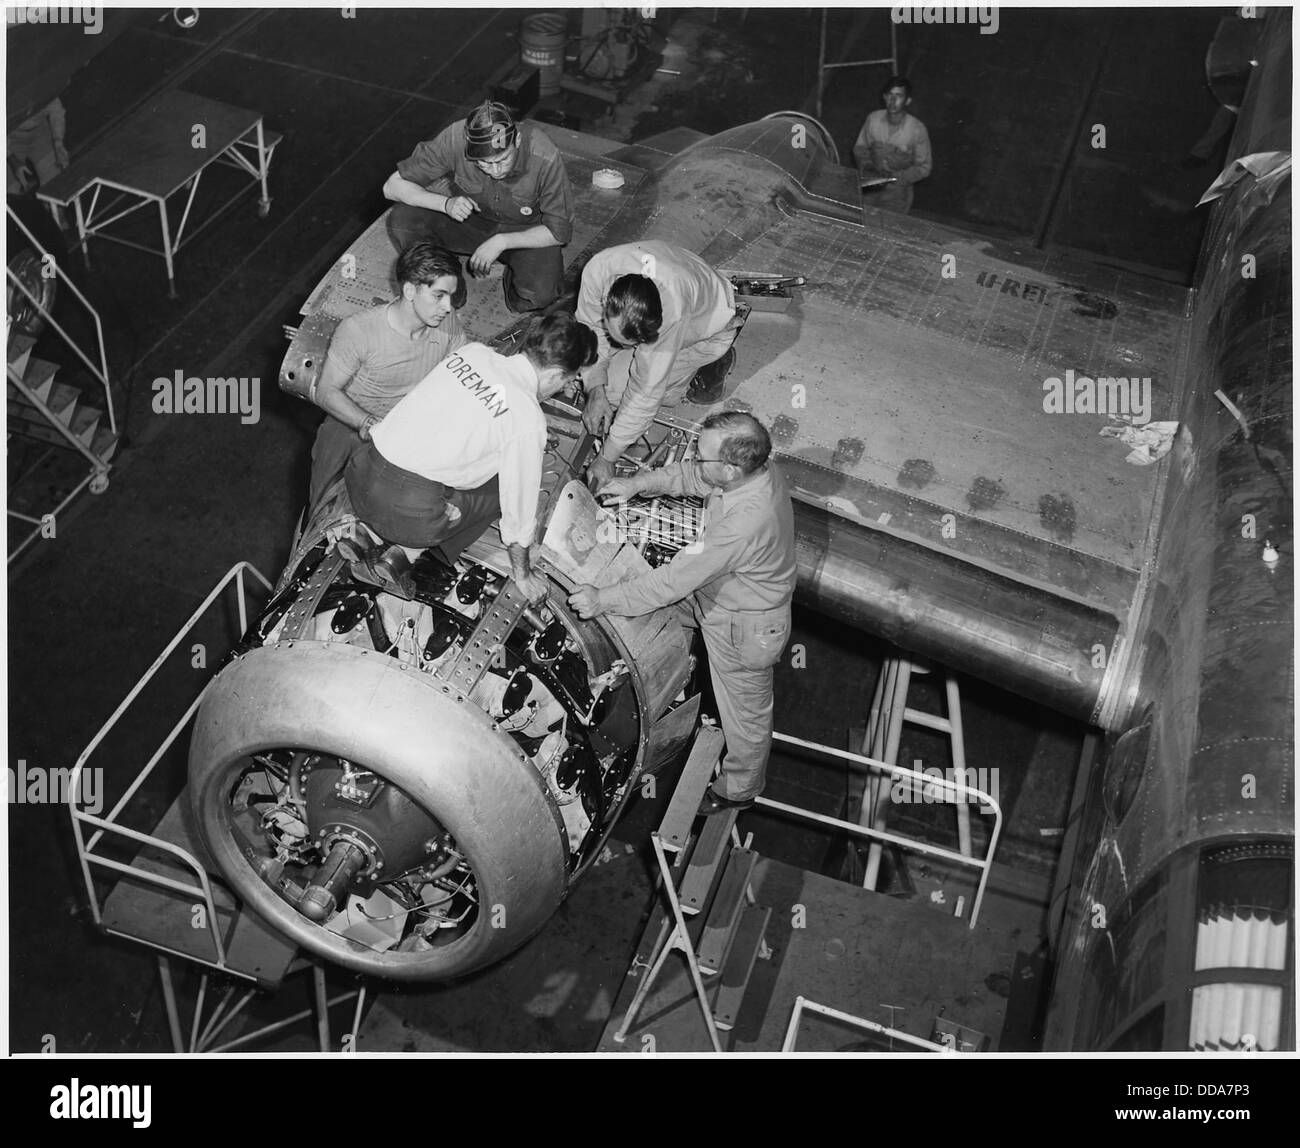 Sous l'étroite supervision d'un contremaître, un nouveau moteur est bien installé dans un bombardier B-25 à l'Amérique du Nord... - - 196385 Banque D'Images